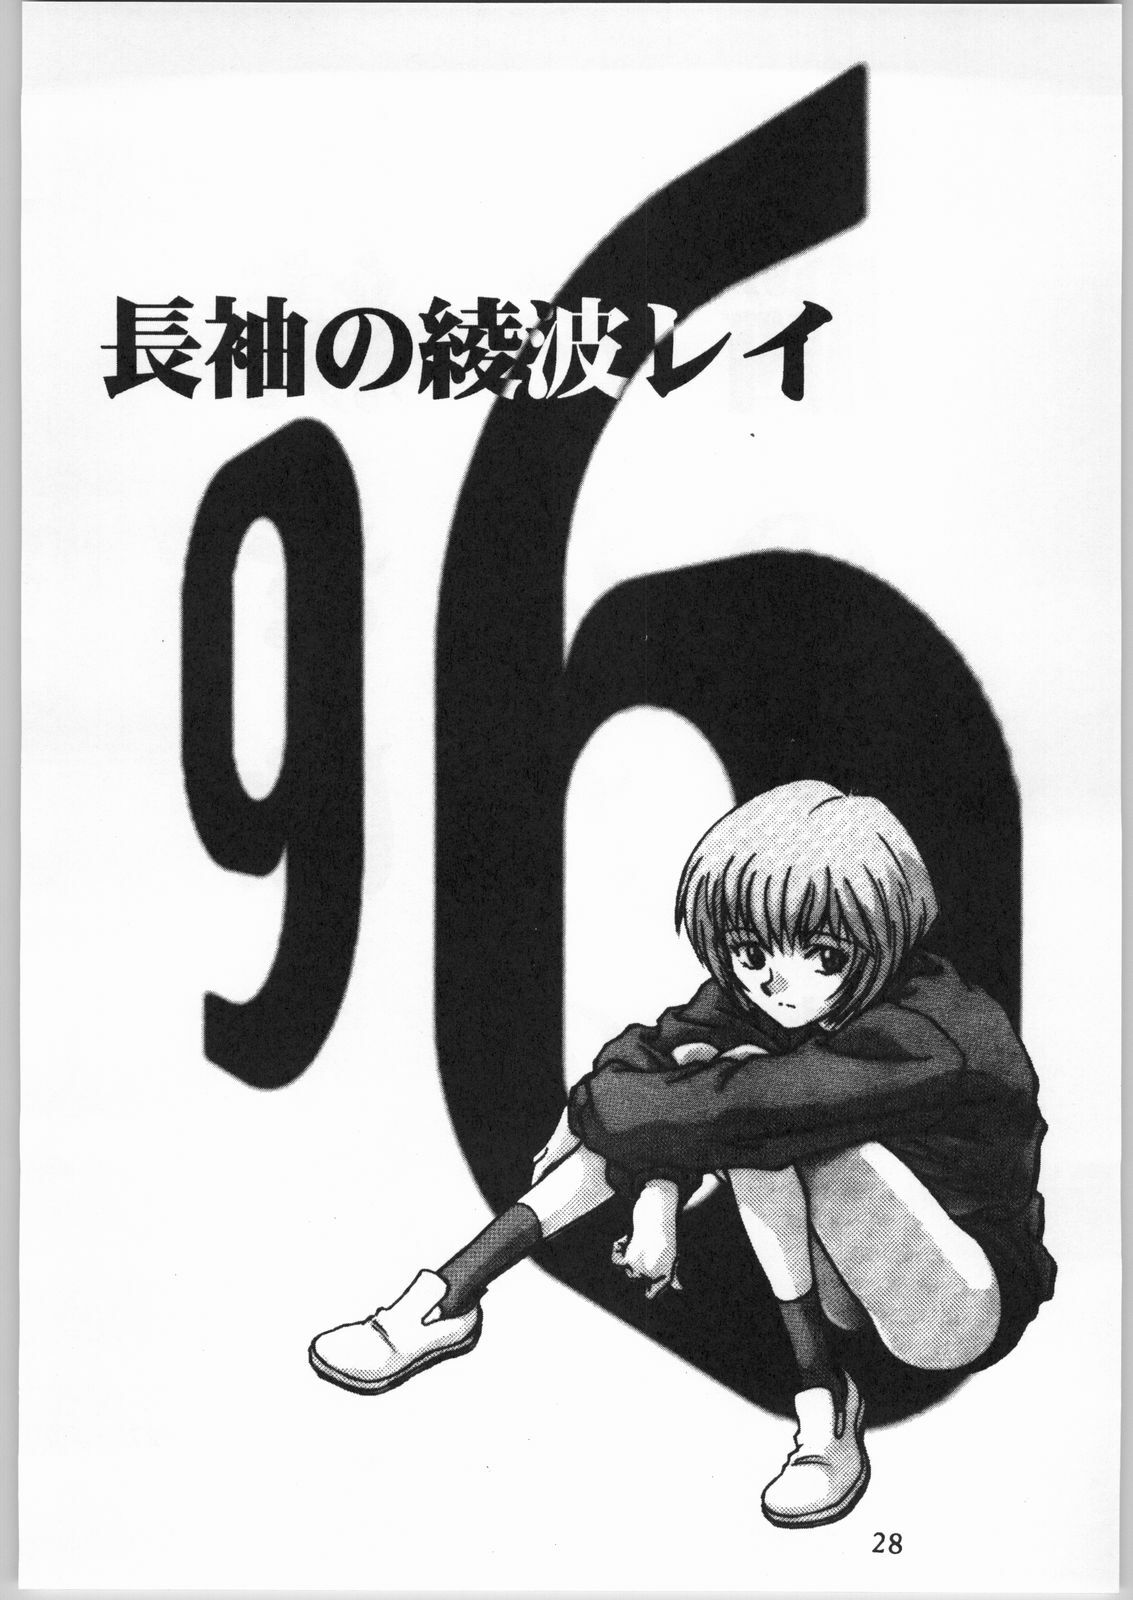 [AXS (Shinobu Akira)] Shinobu Akira Kojinshi 2 (Various) page 29 full